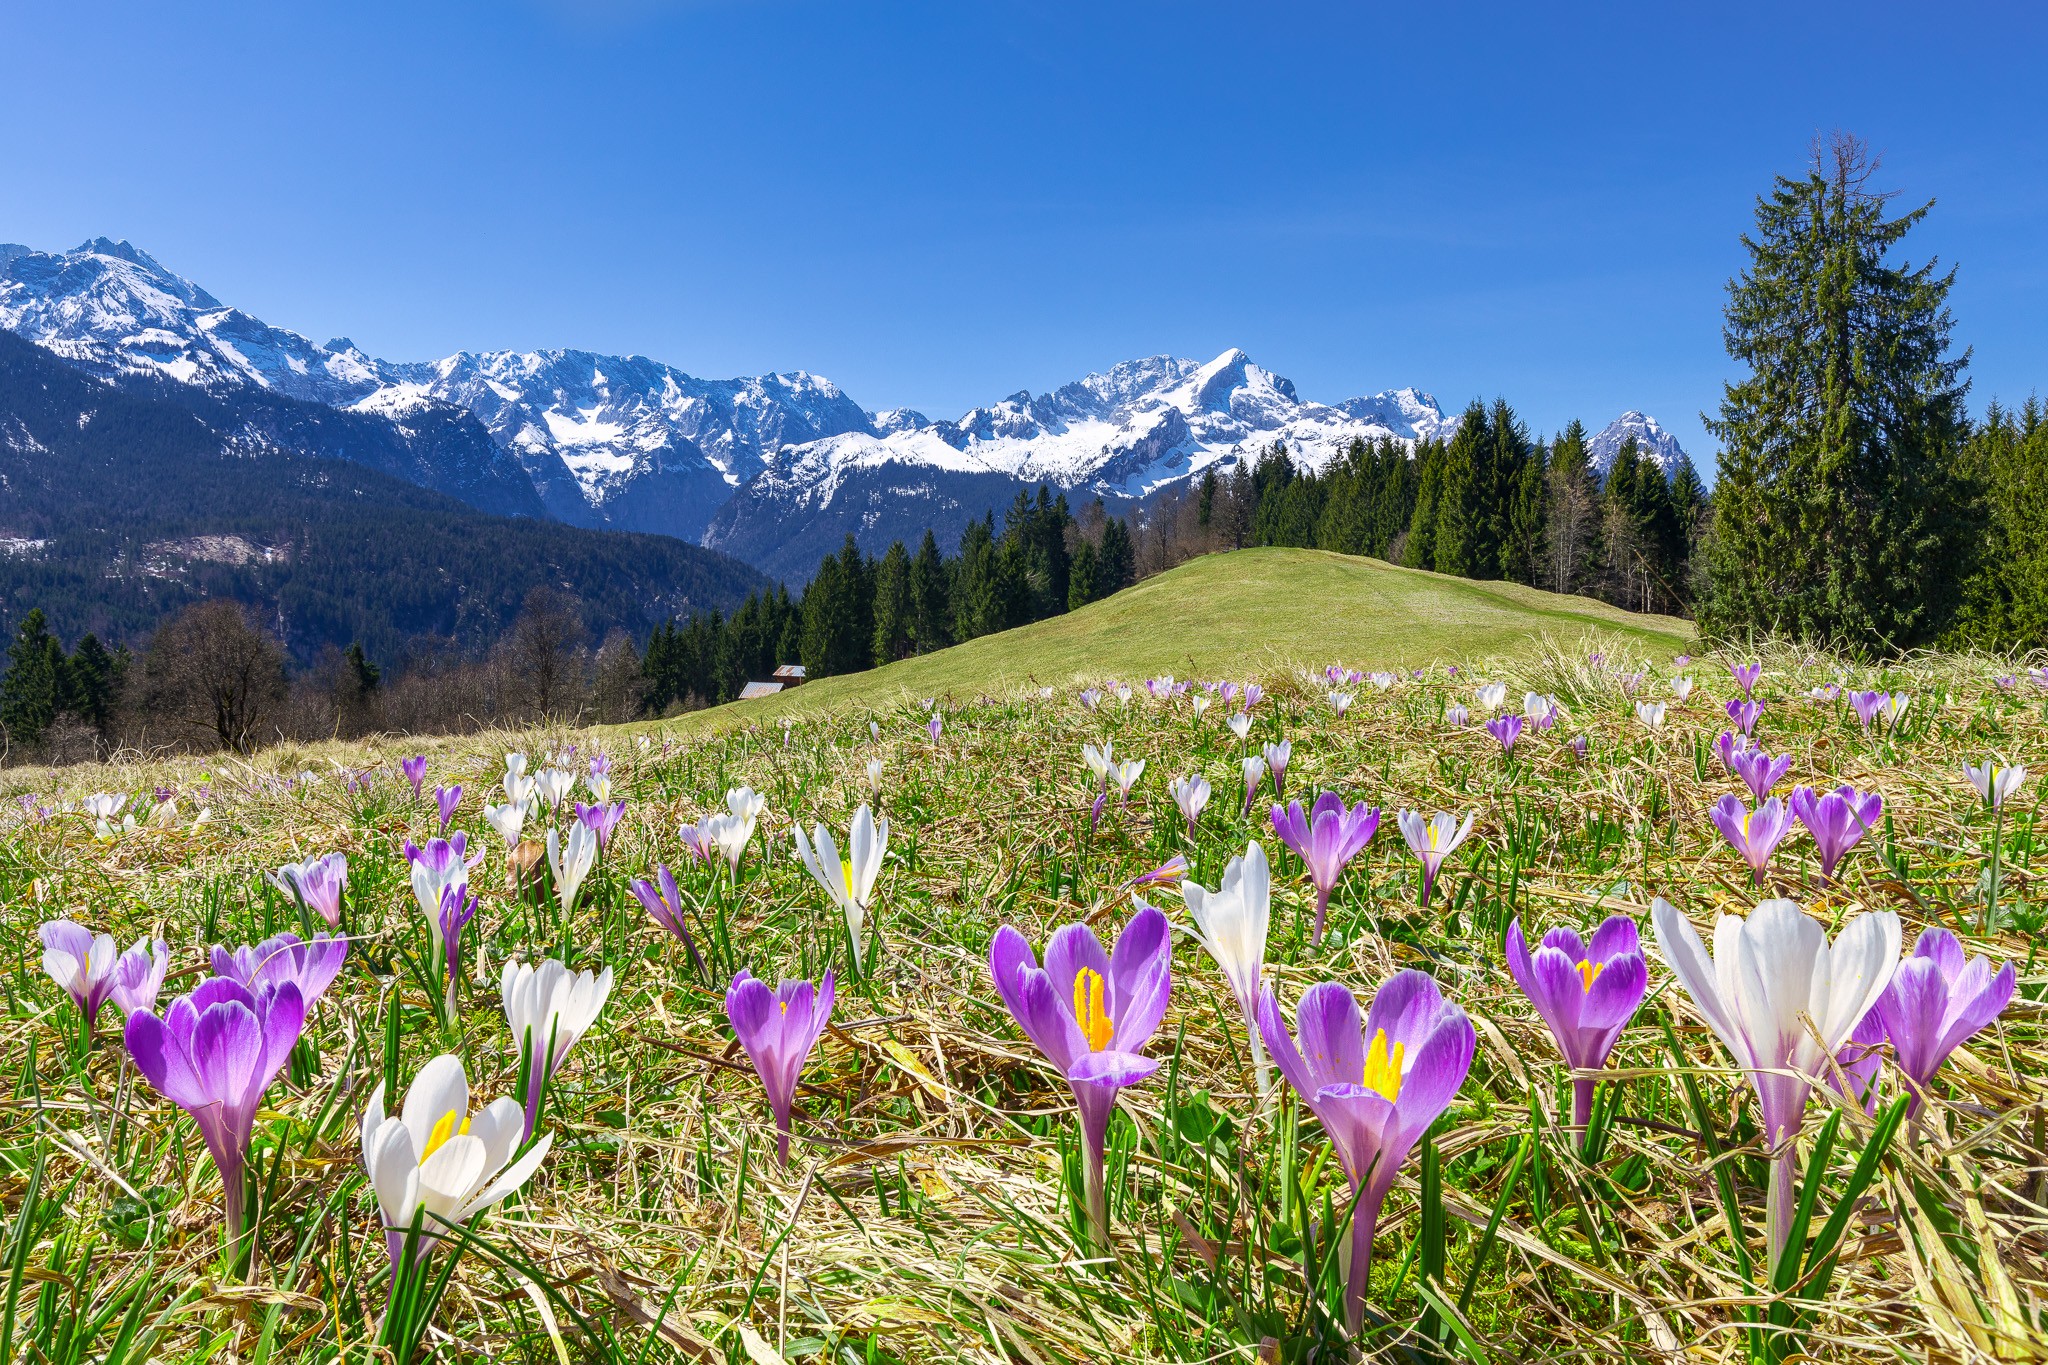 Alpen Blumen - Garmisch-Partenkirchen. Vom Eckbauer zur Elmauer Alm hat man immer wieder schöne Ausblicke auf das Wettersteingebirge und zum Estergebirge. Auf den Bergwiesen wachsen im Frühling Massen an Krokussen. Leicht zu erreichen mit der Eckbauer-Bahn.